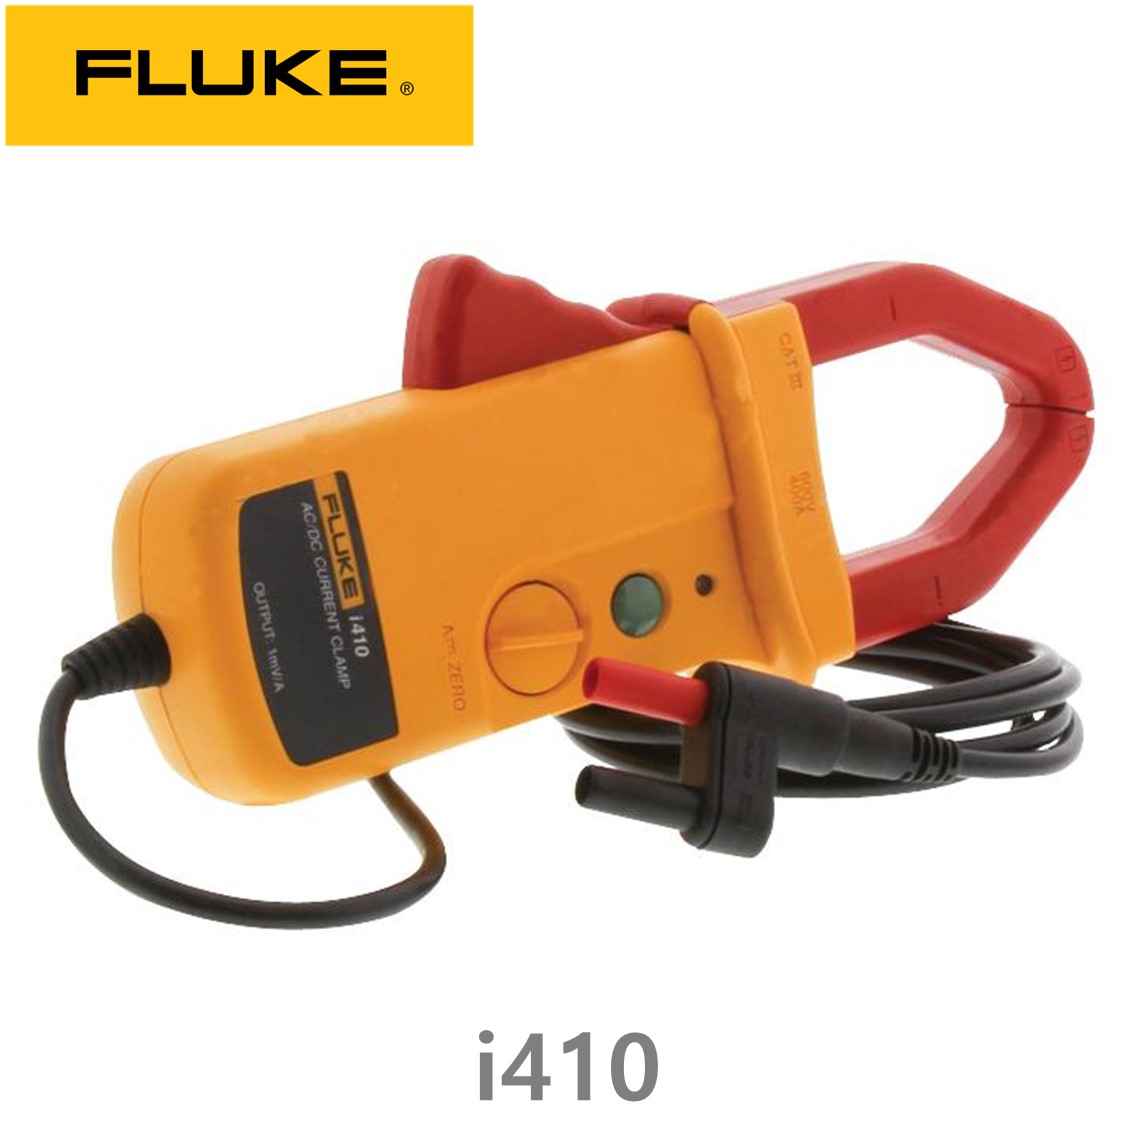 [ FLUKE i410 ] 플루크 전류클램프 AC/DC 400A